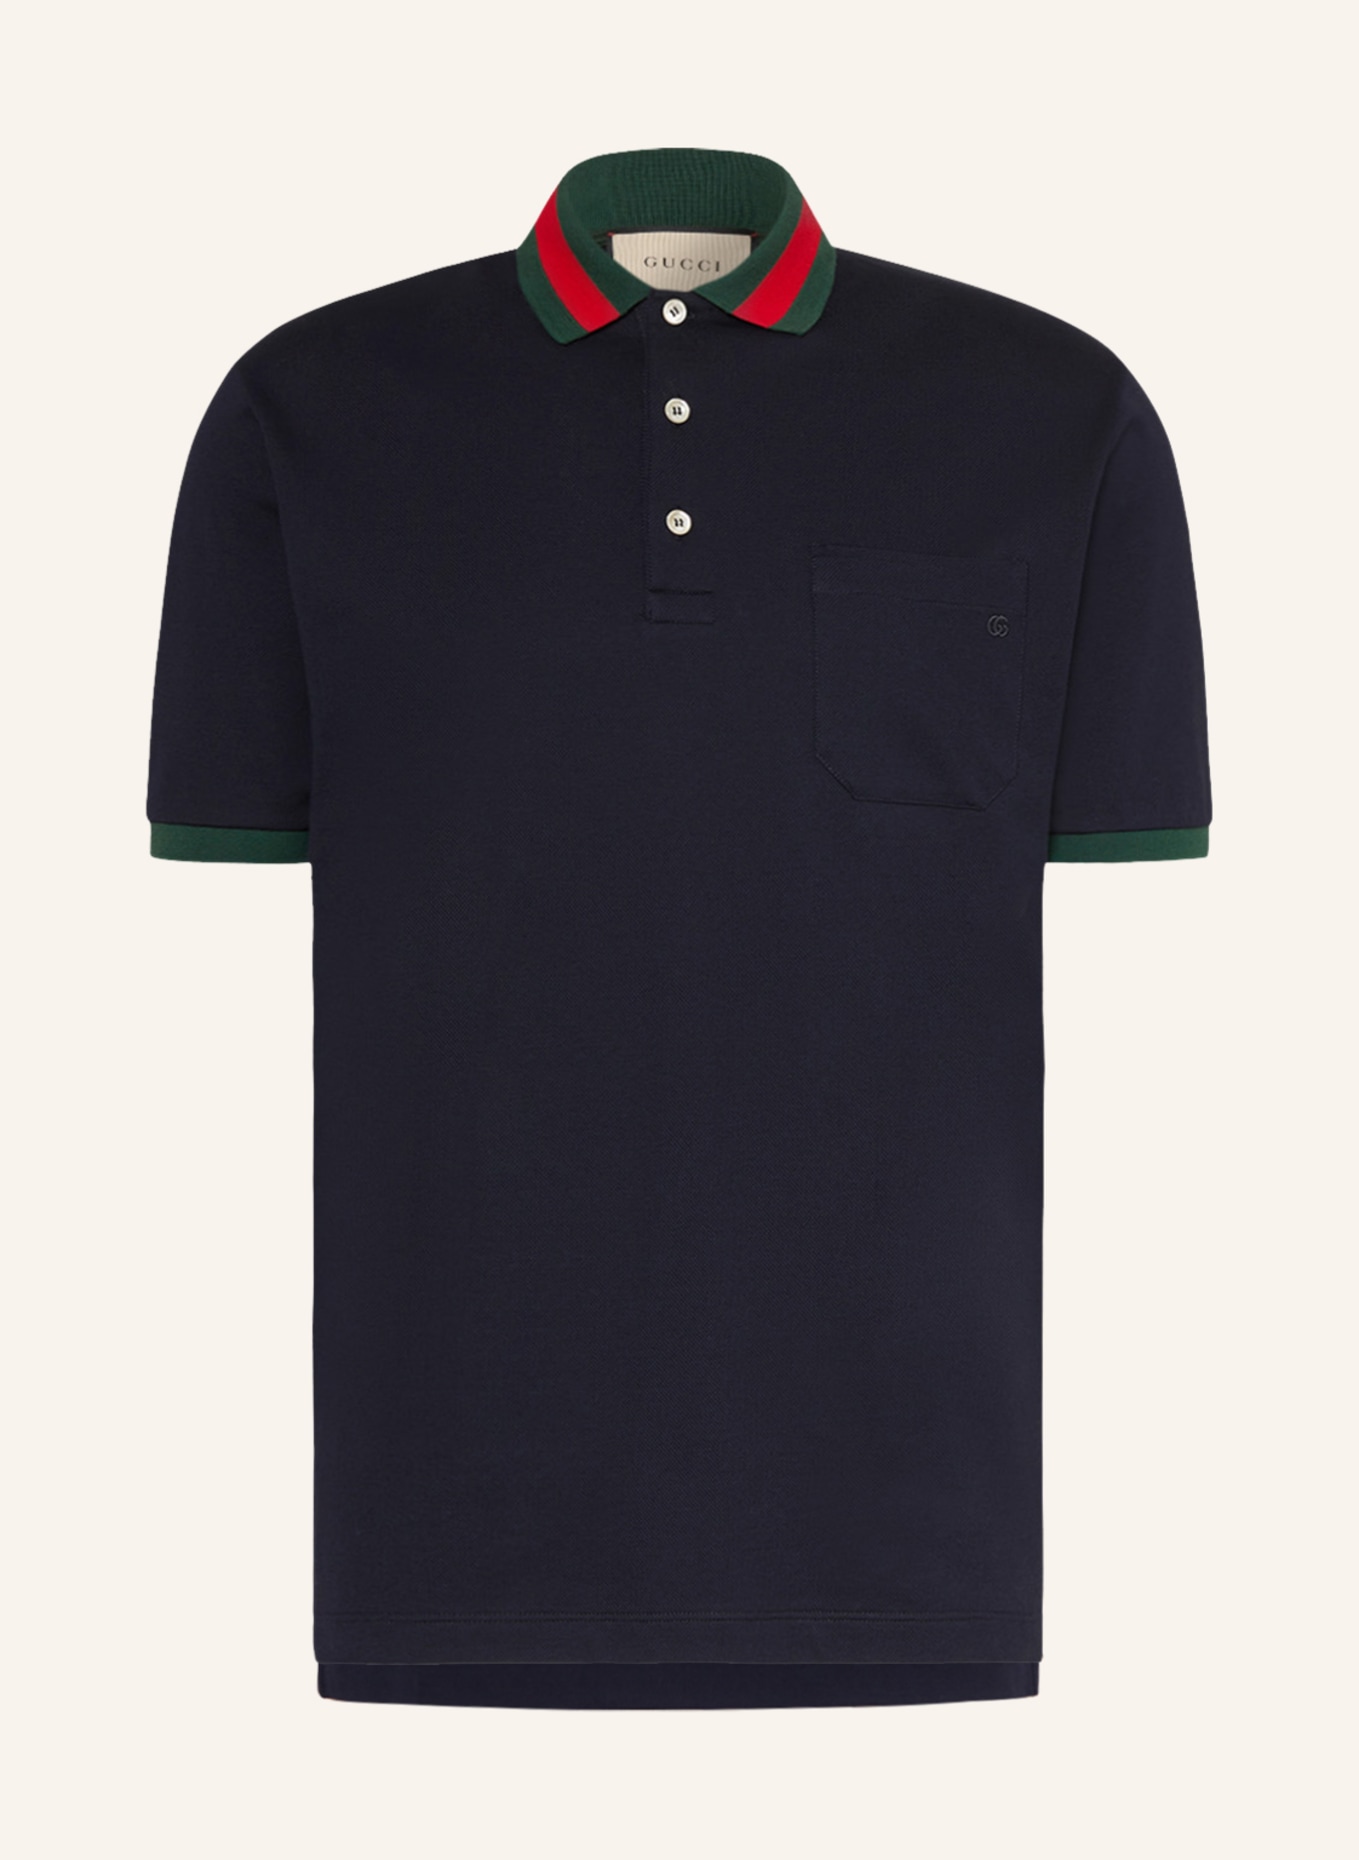 GUCCI Piqué-Poloshirt, Farbe: DUNKELBLAU (Bild 1)